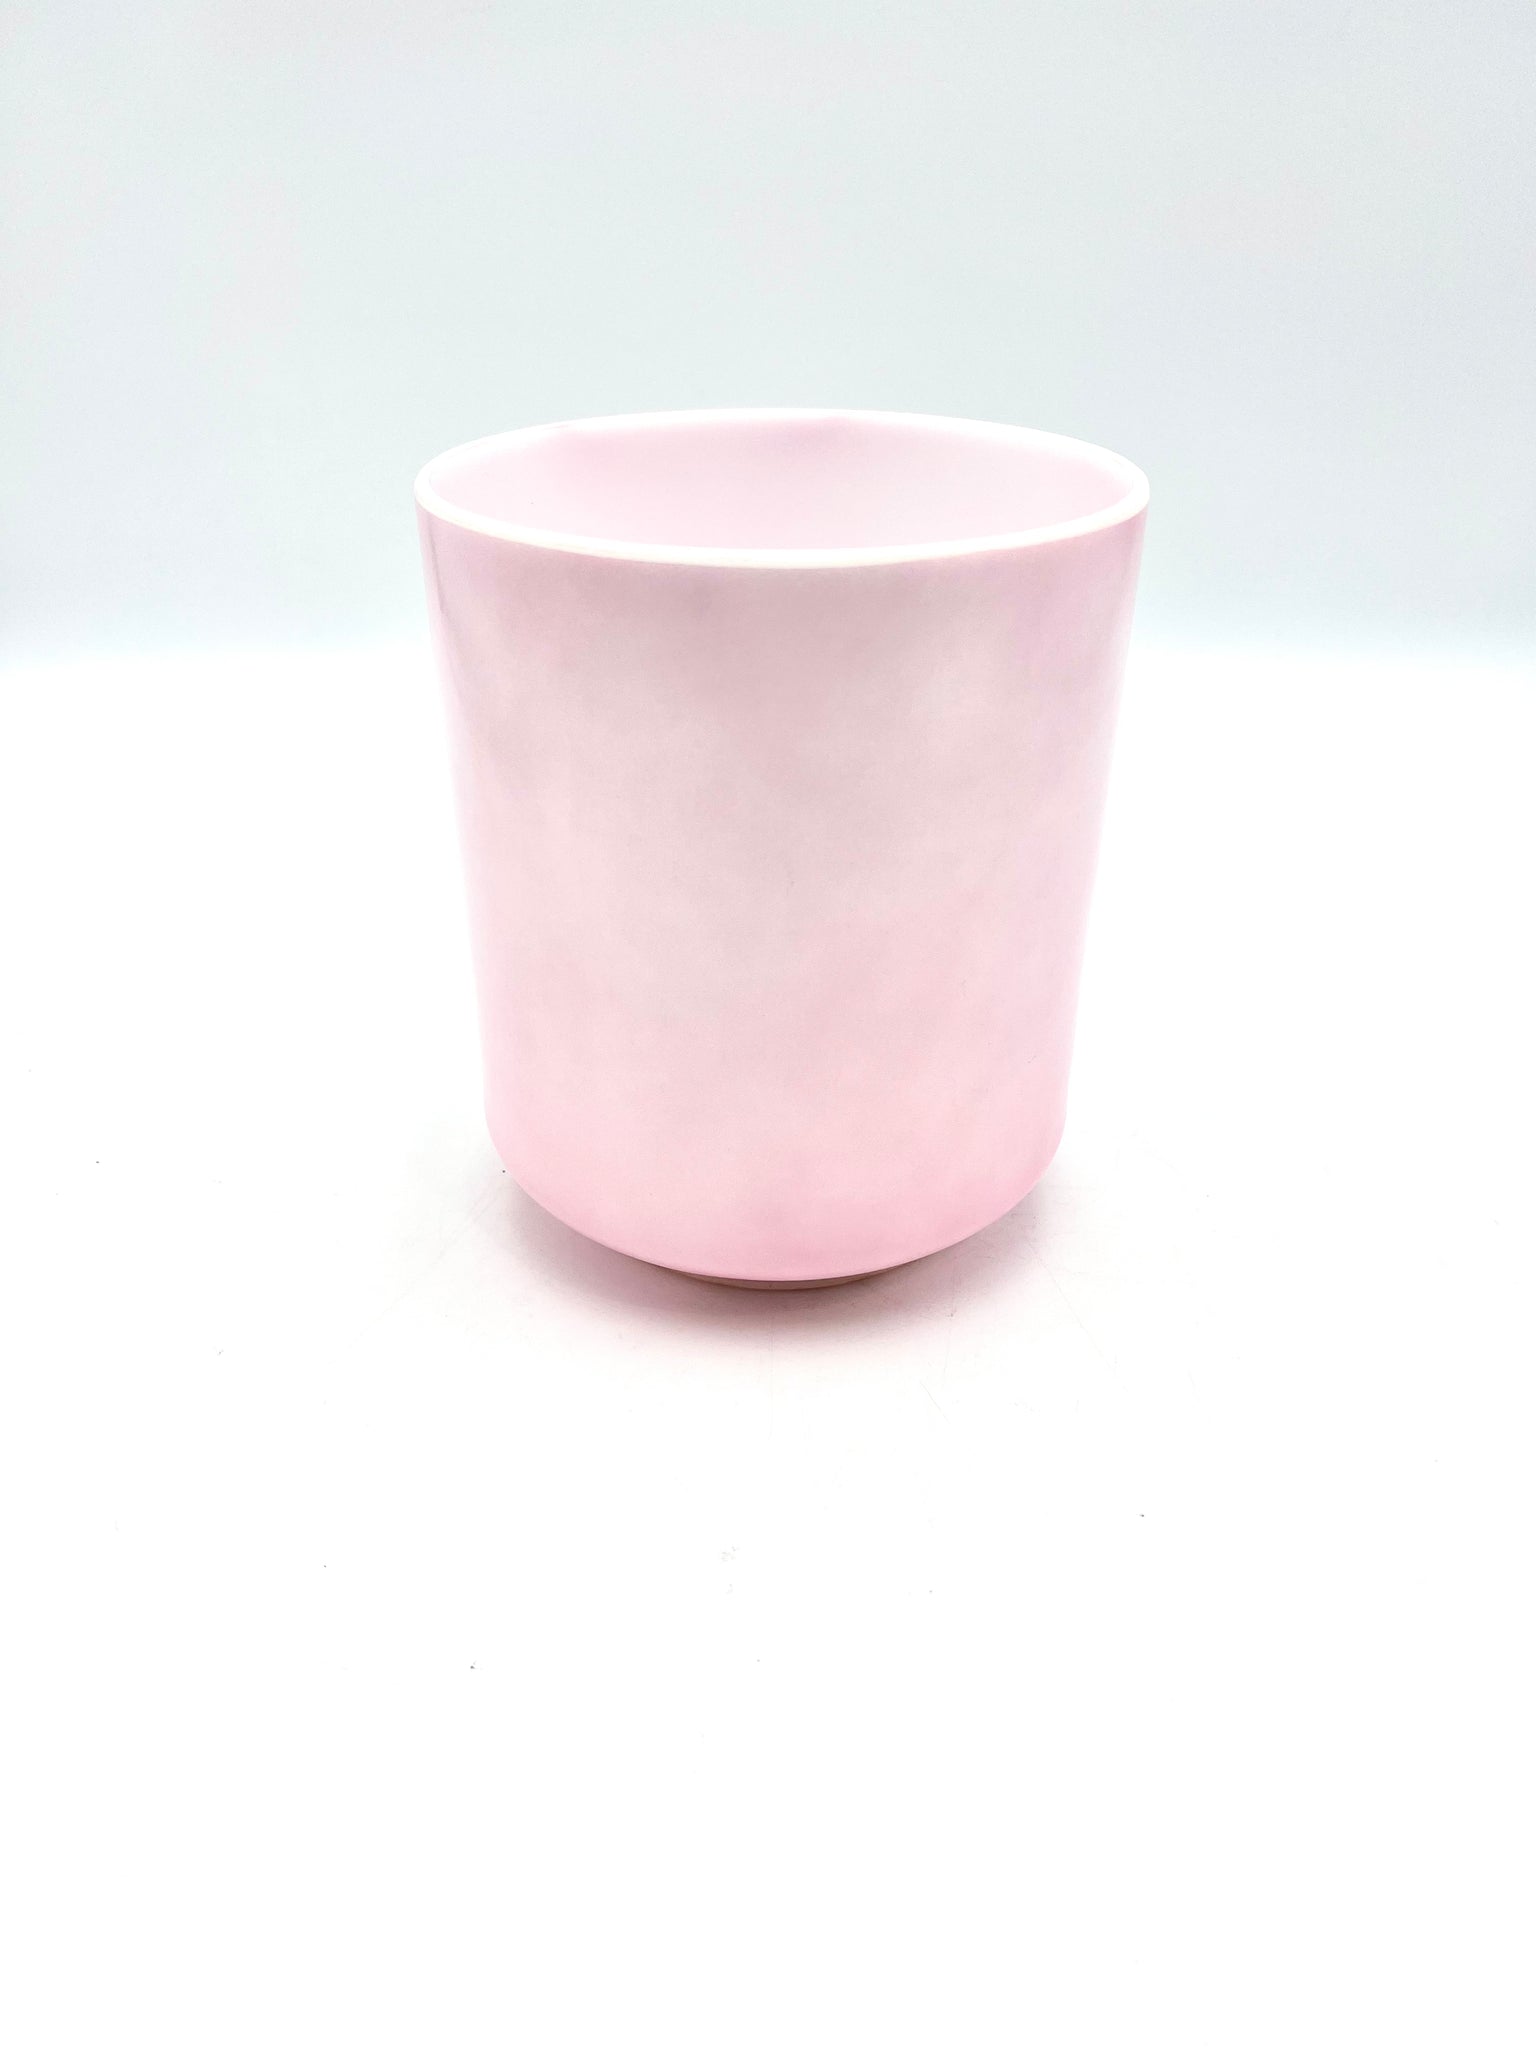 6" B+15 Pink Ocean Gold Crystal Alchemy Bowl (Maui)